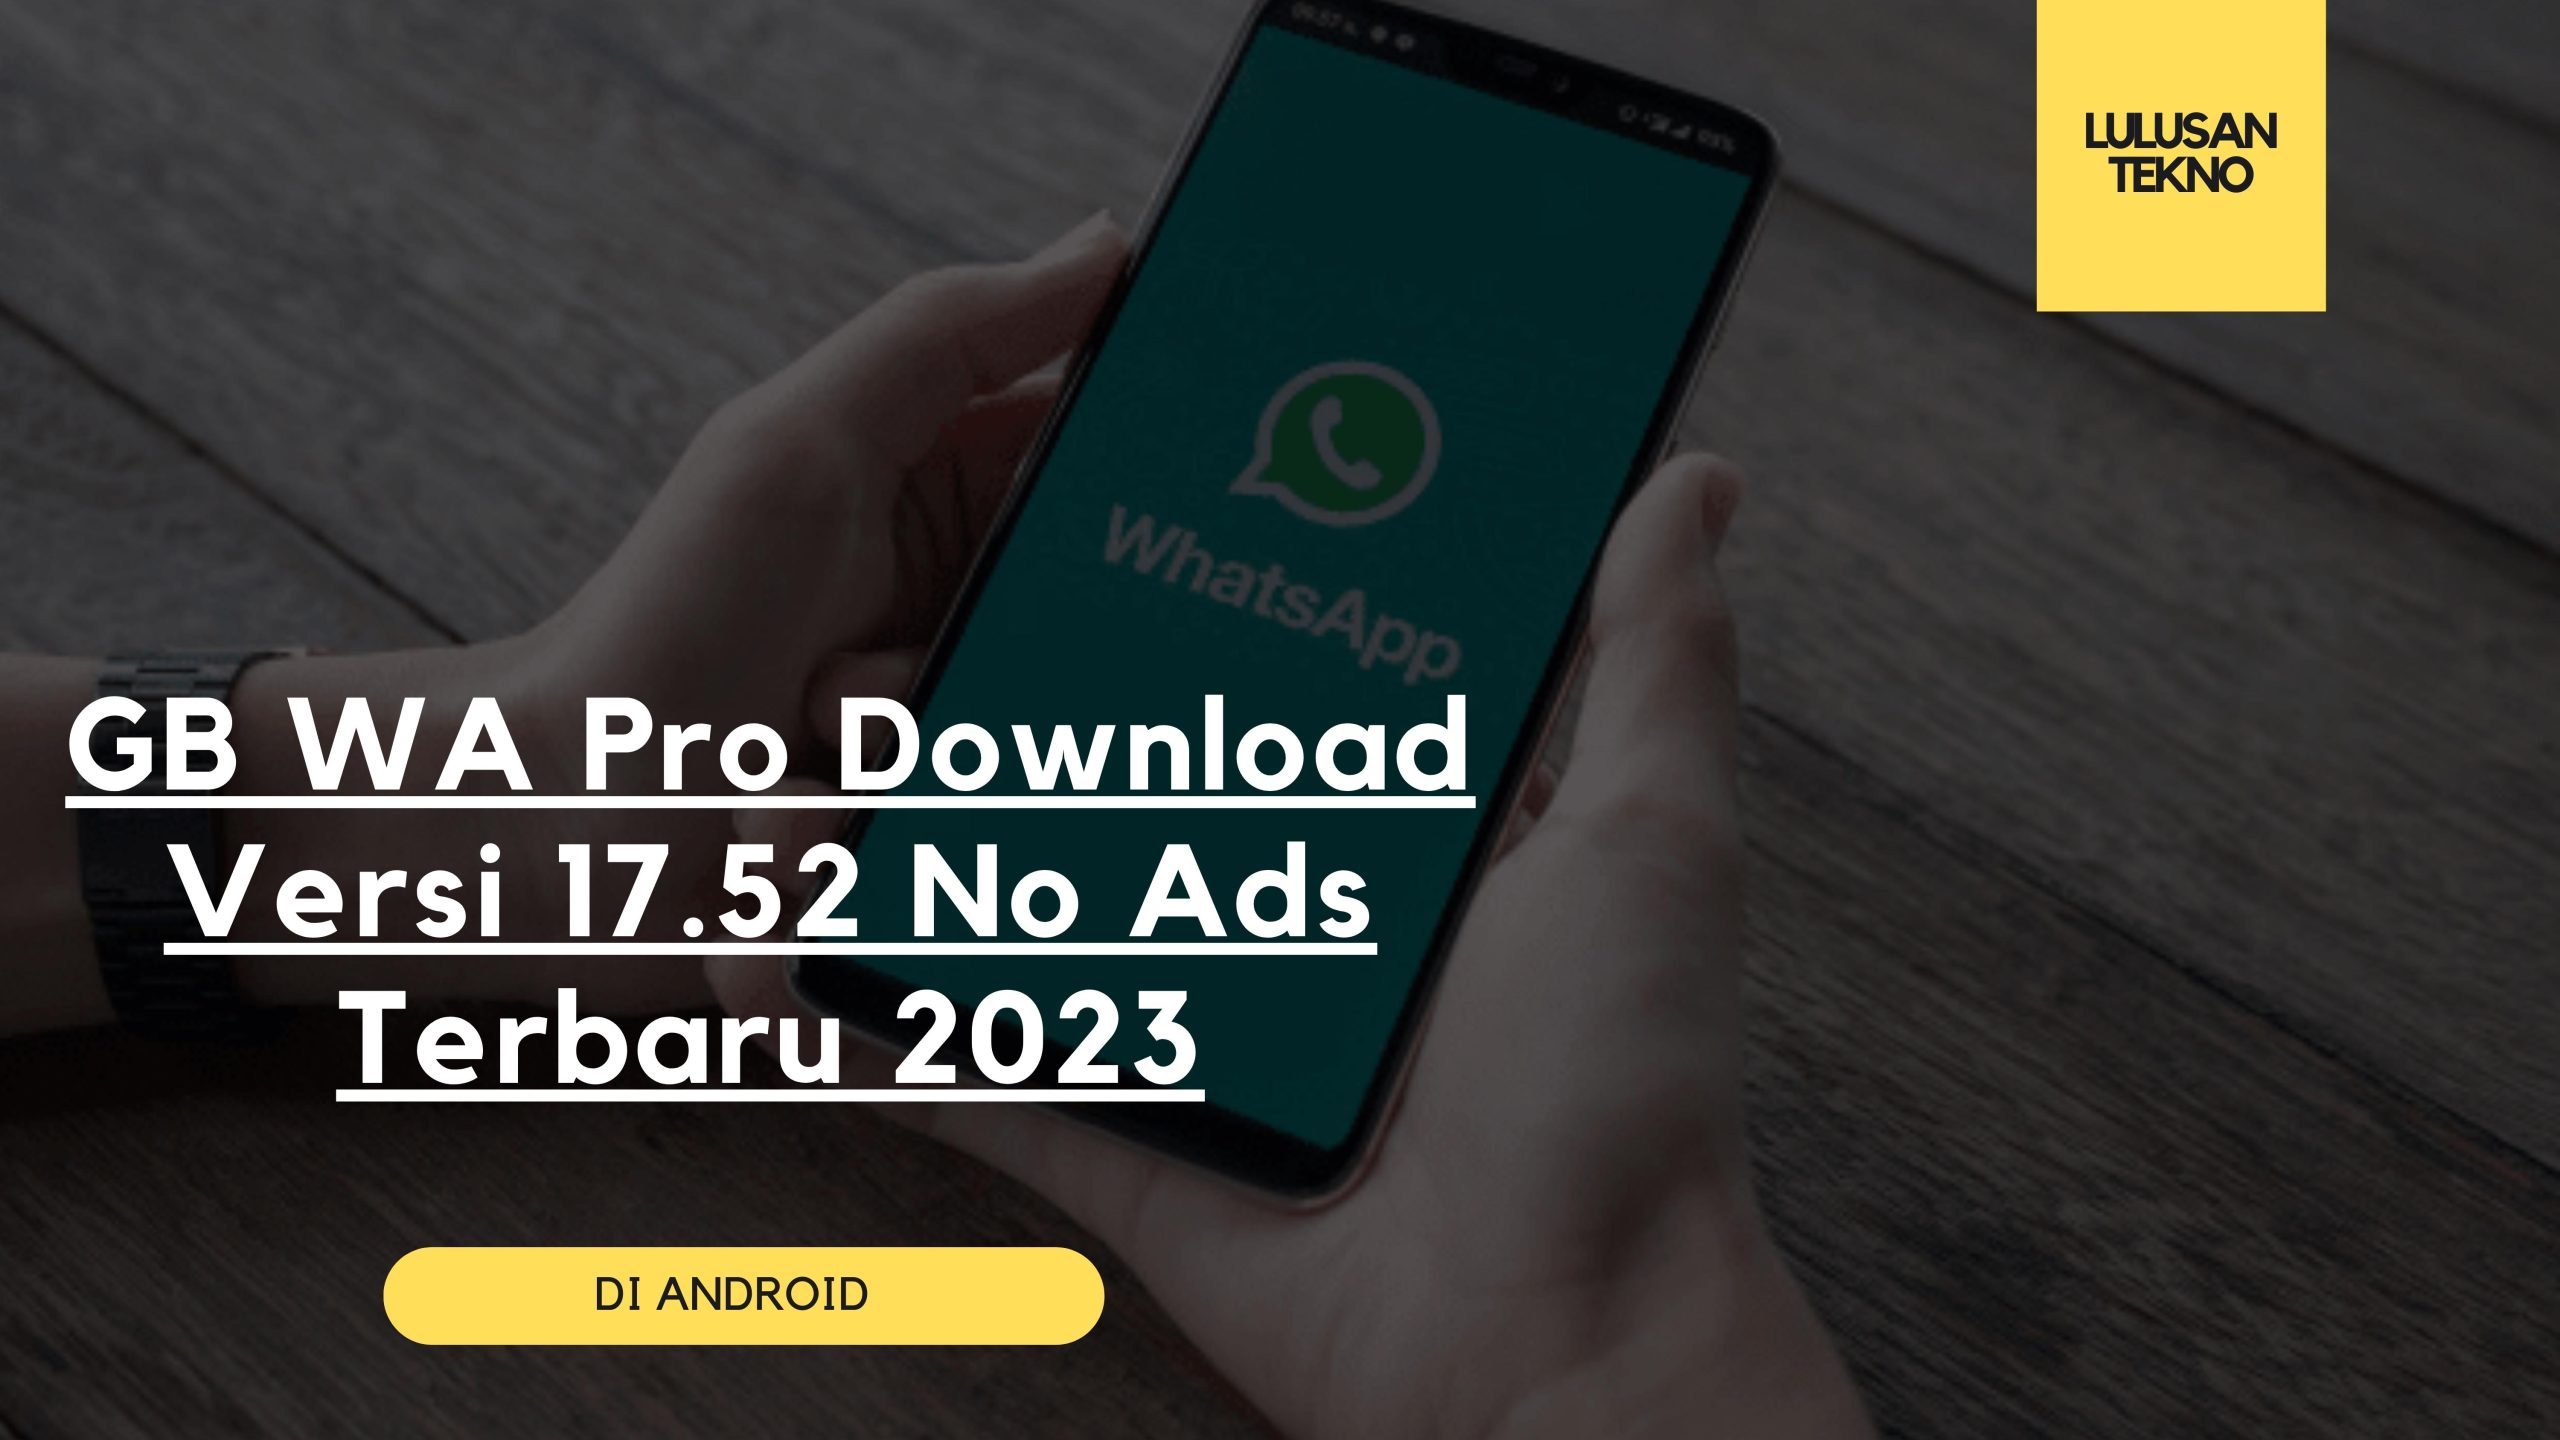 GB WA Pro Download Versi 17.52 No Ads Terbaru 2023